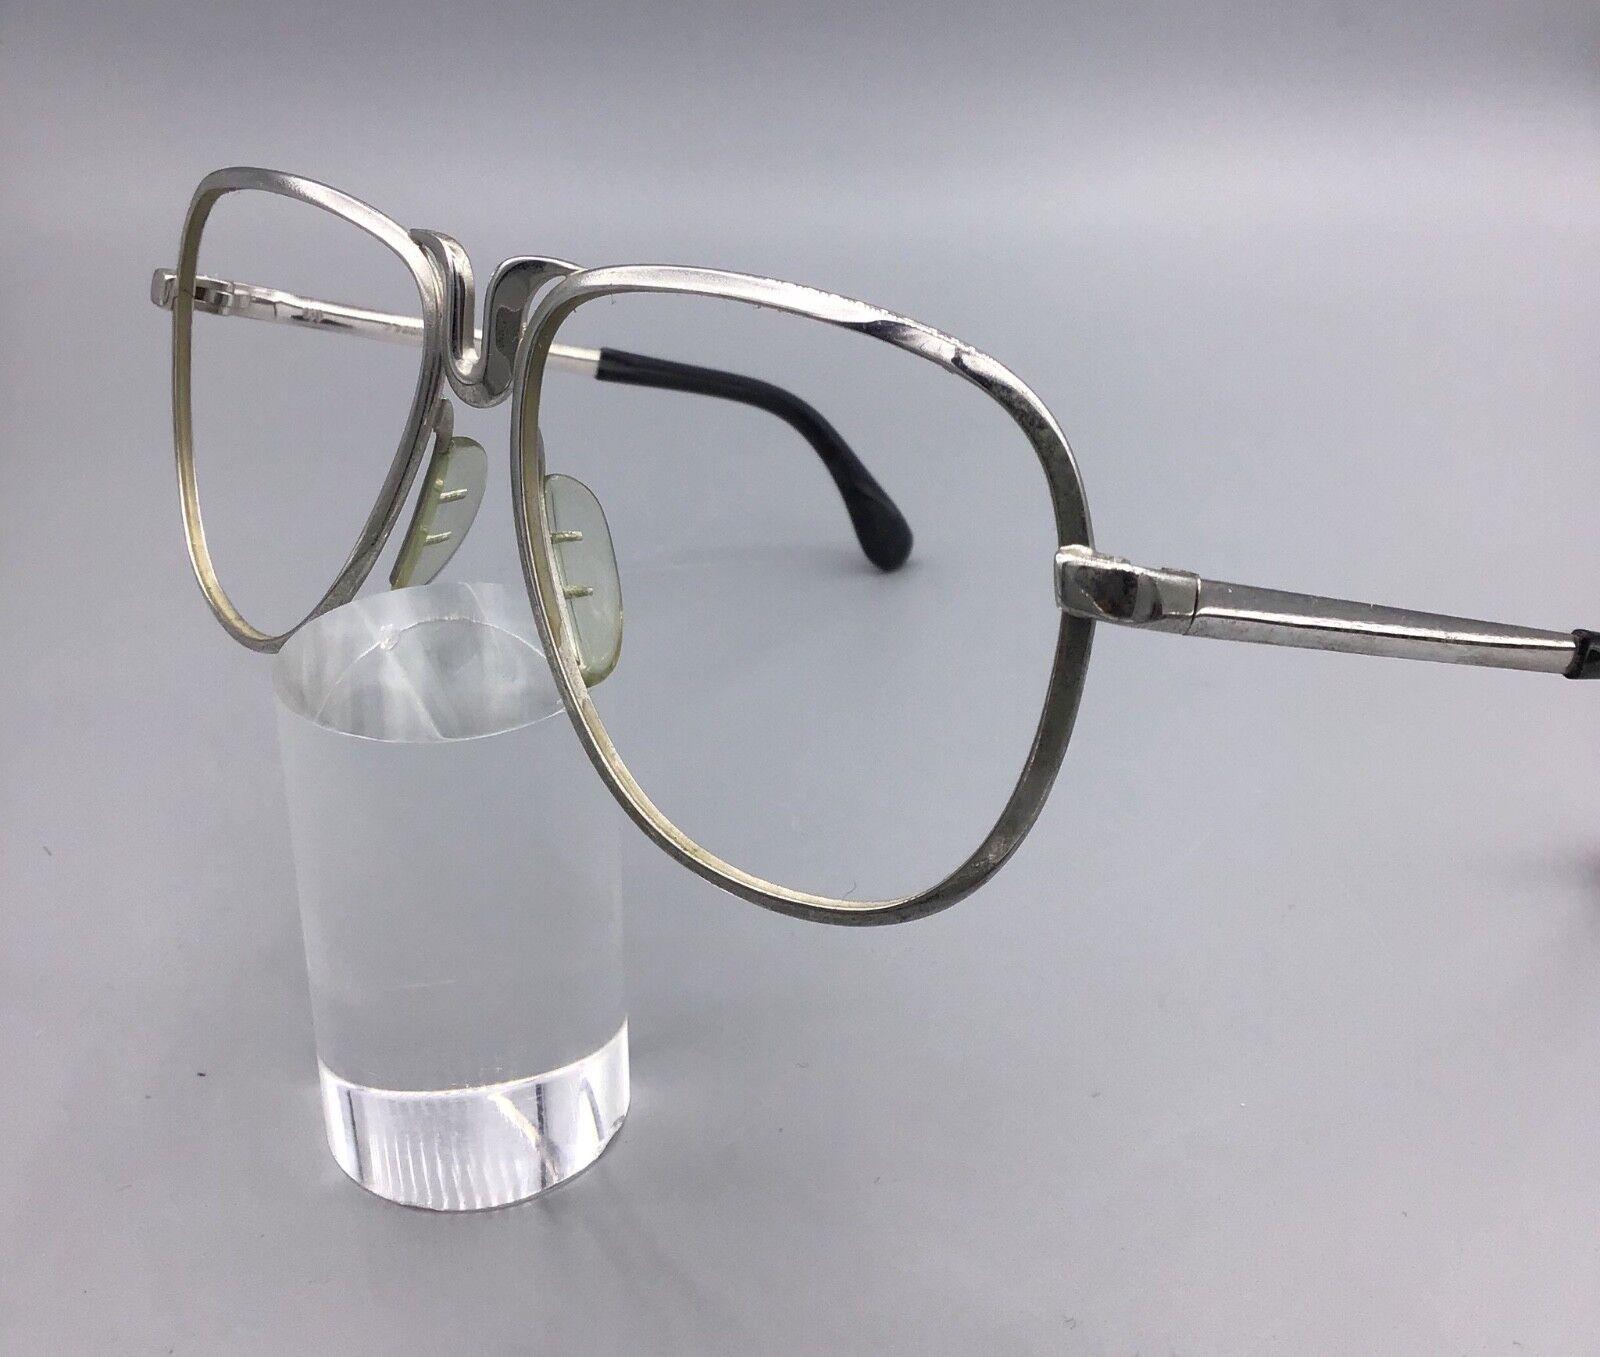 Marwitz occhiale vintage brillen eyewear frame lunettes gafas model 7807 BC7